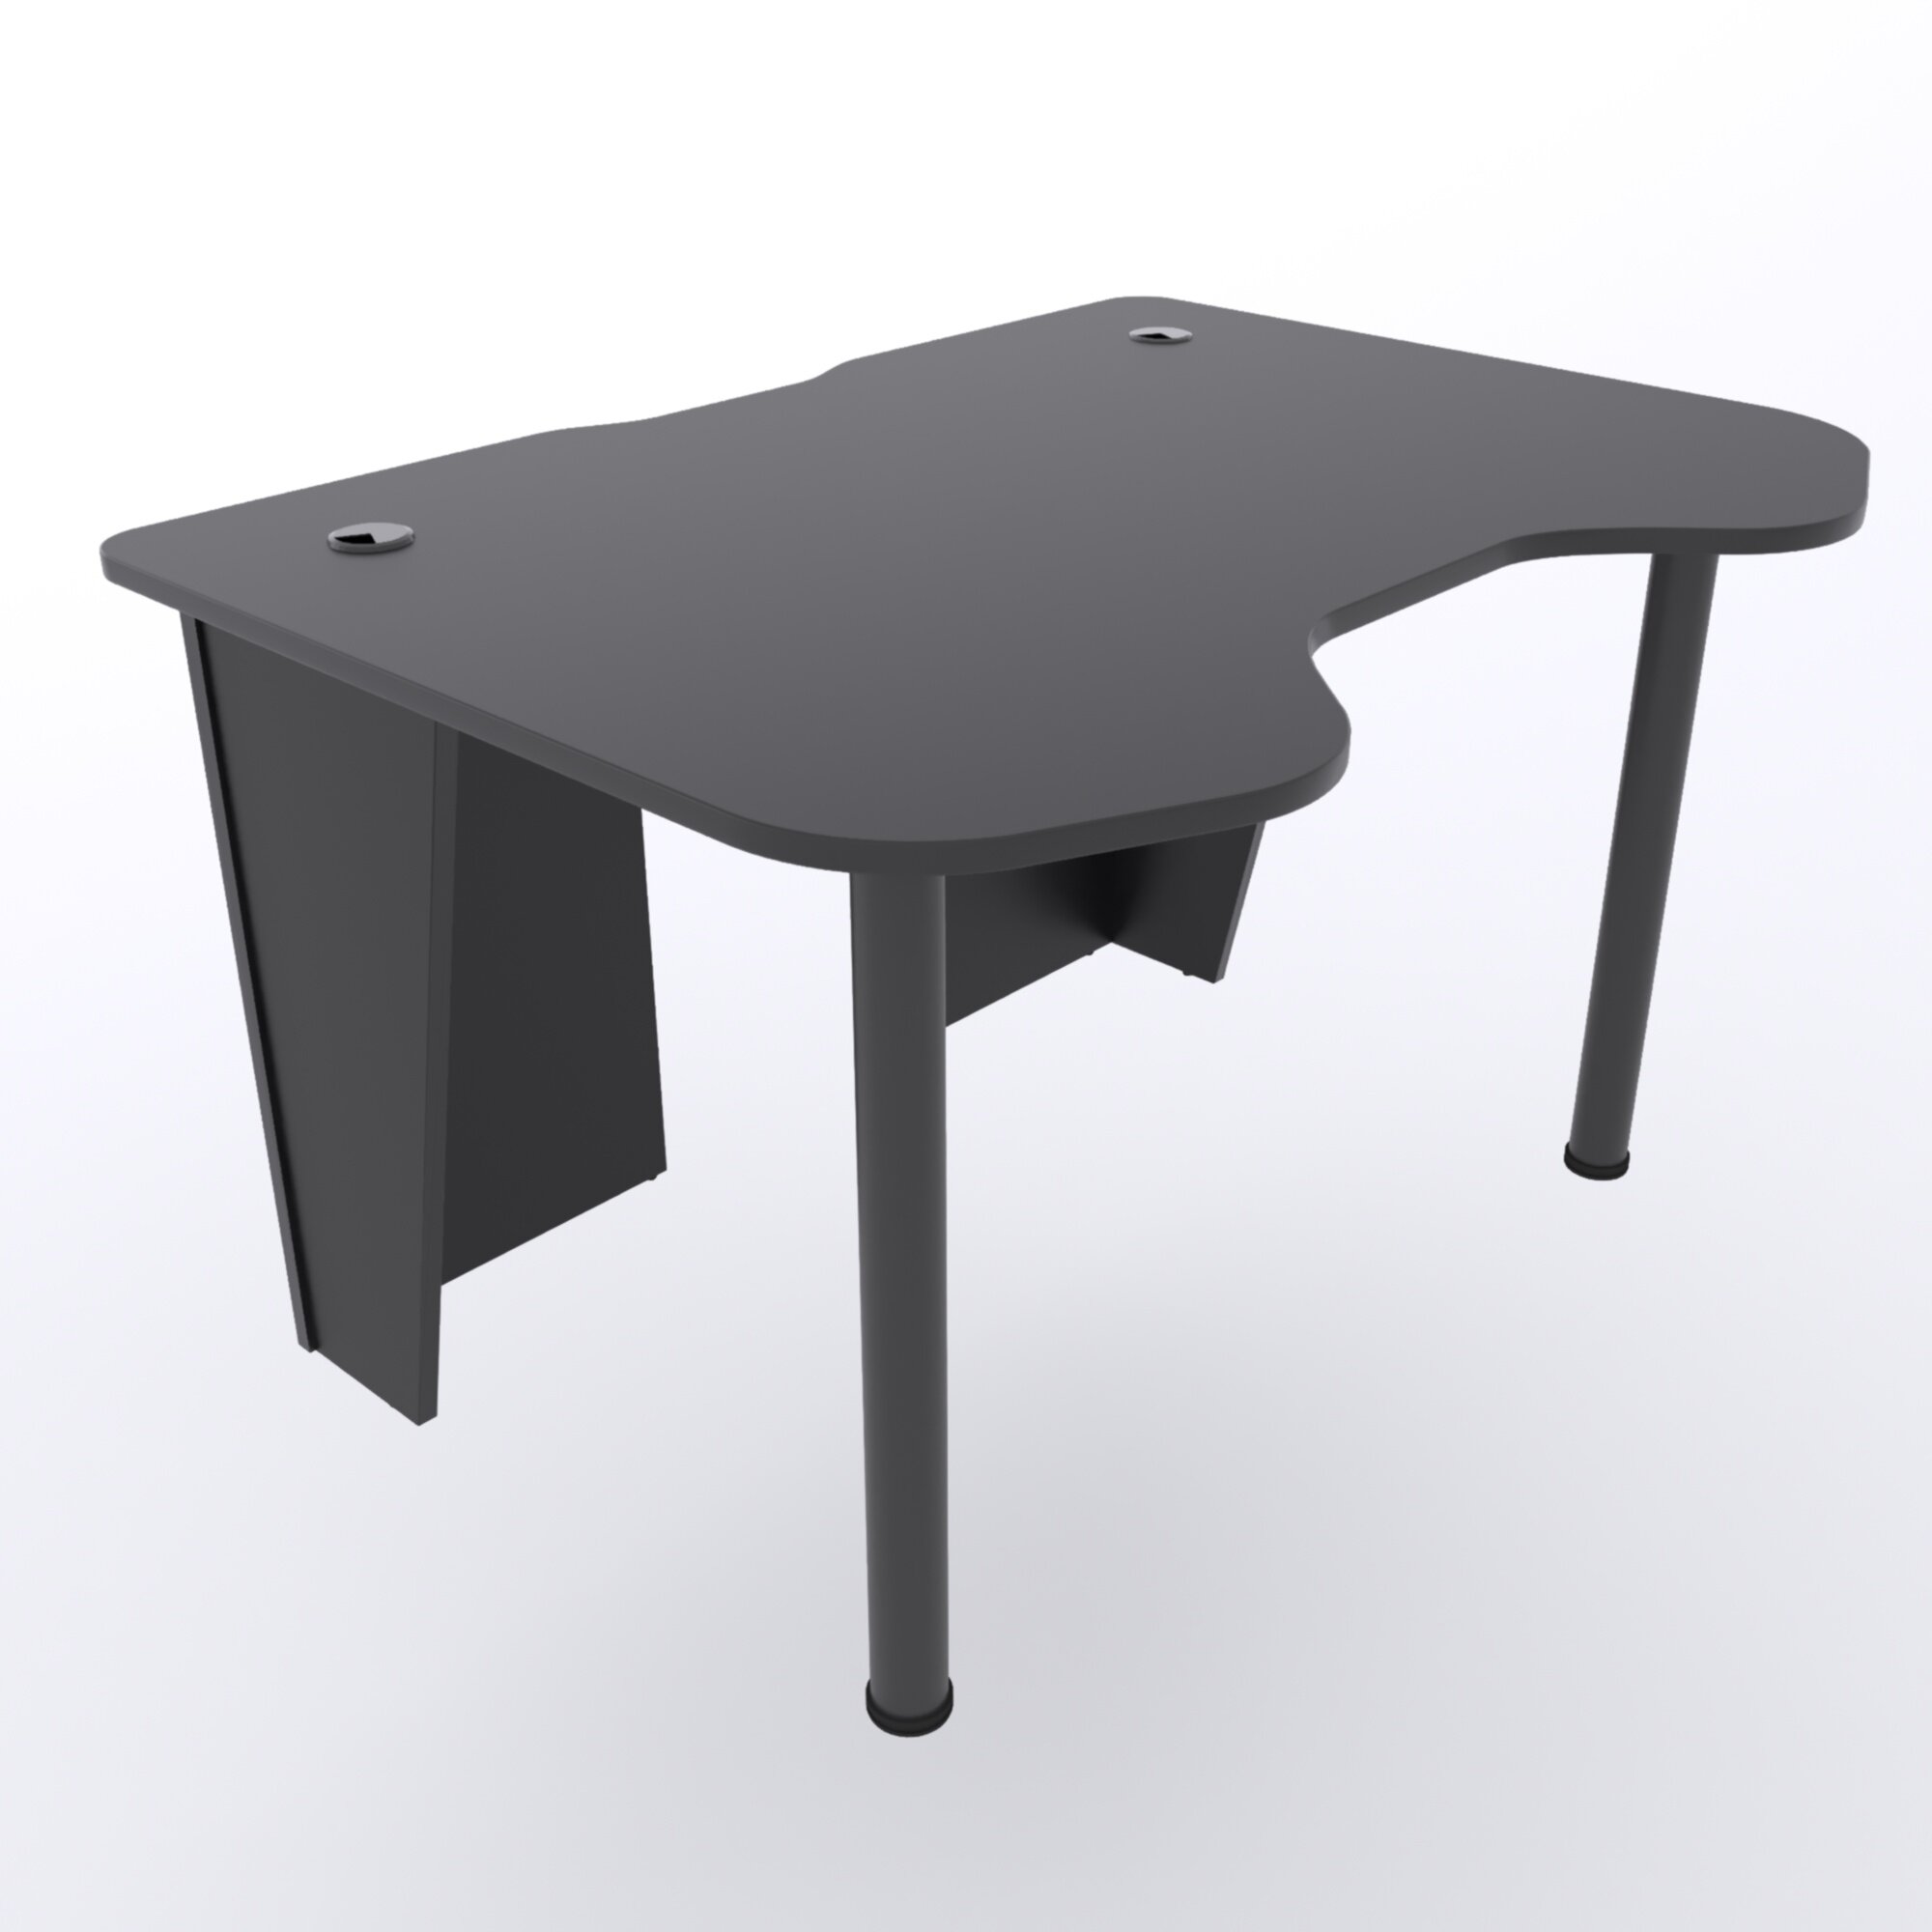 Игровой компьютерный стол "Старк", 140x90x75 см, чёрный